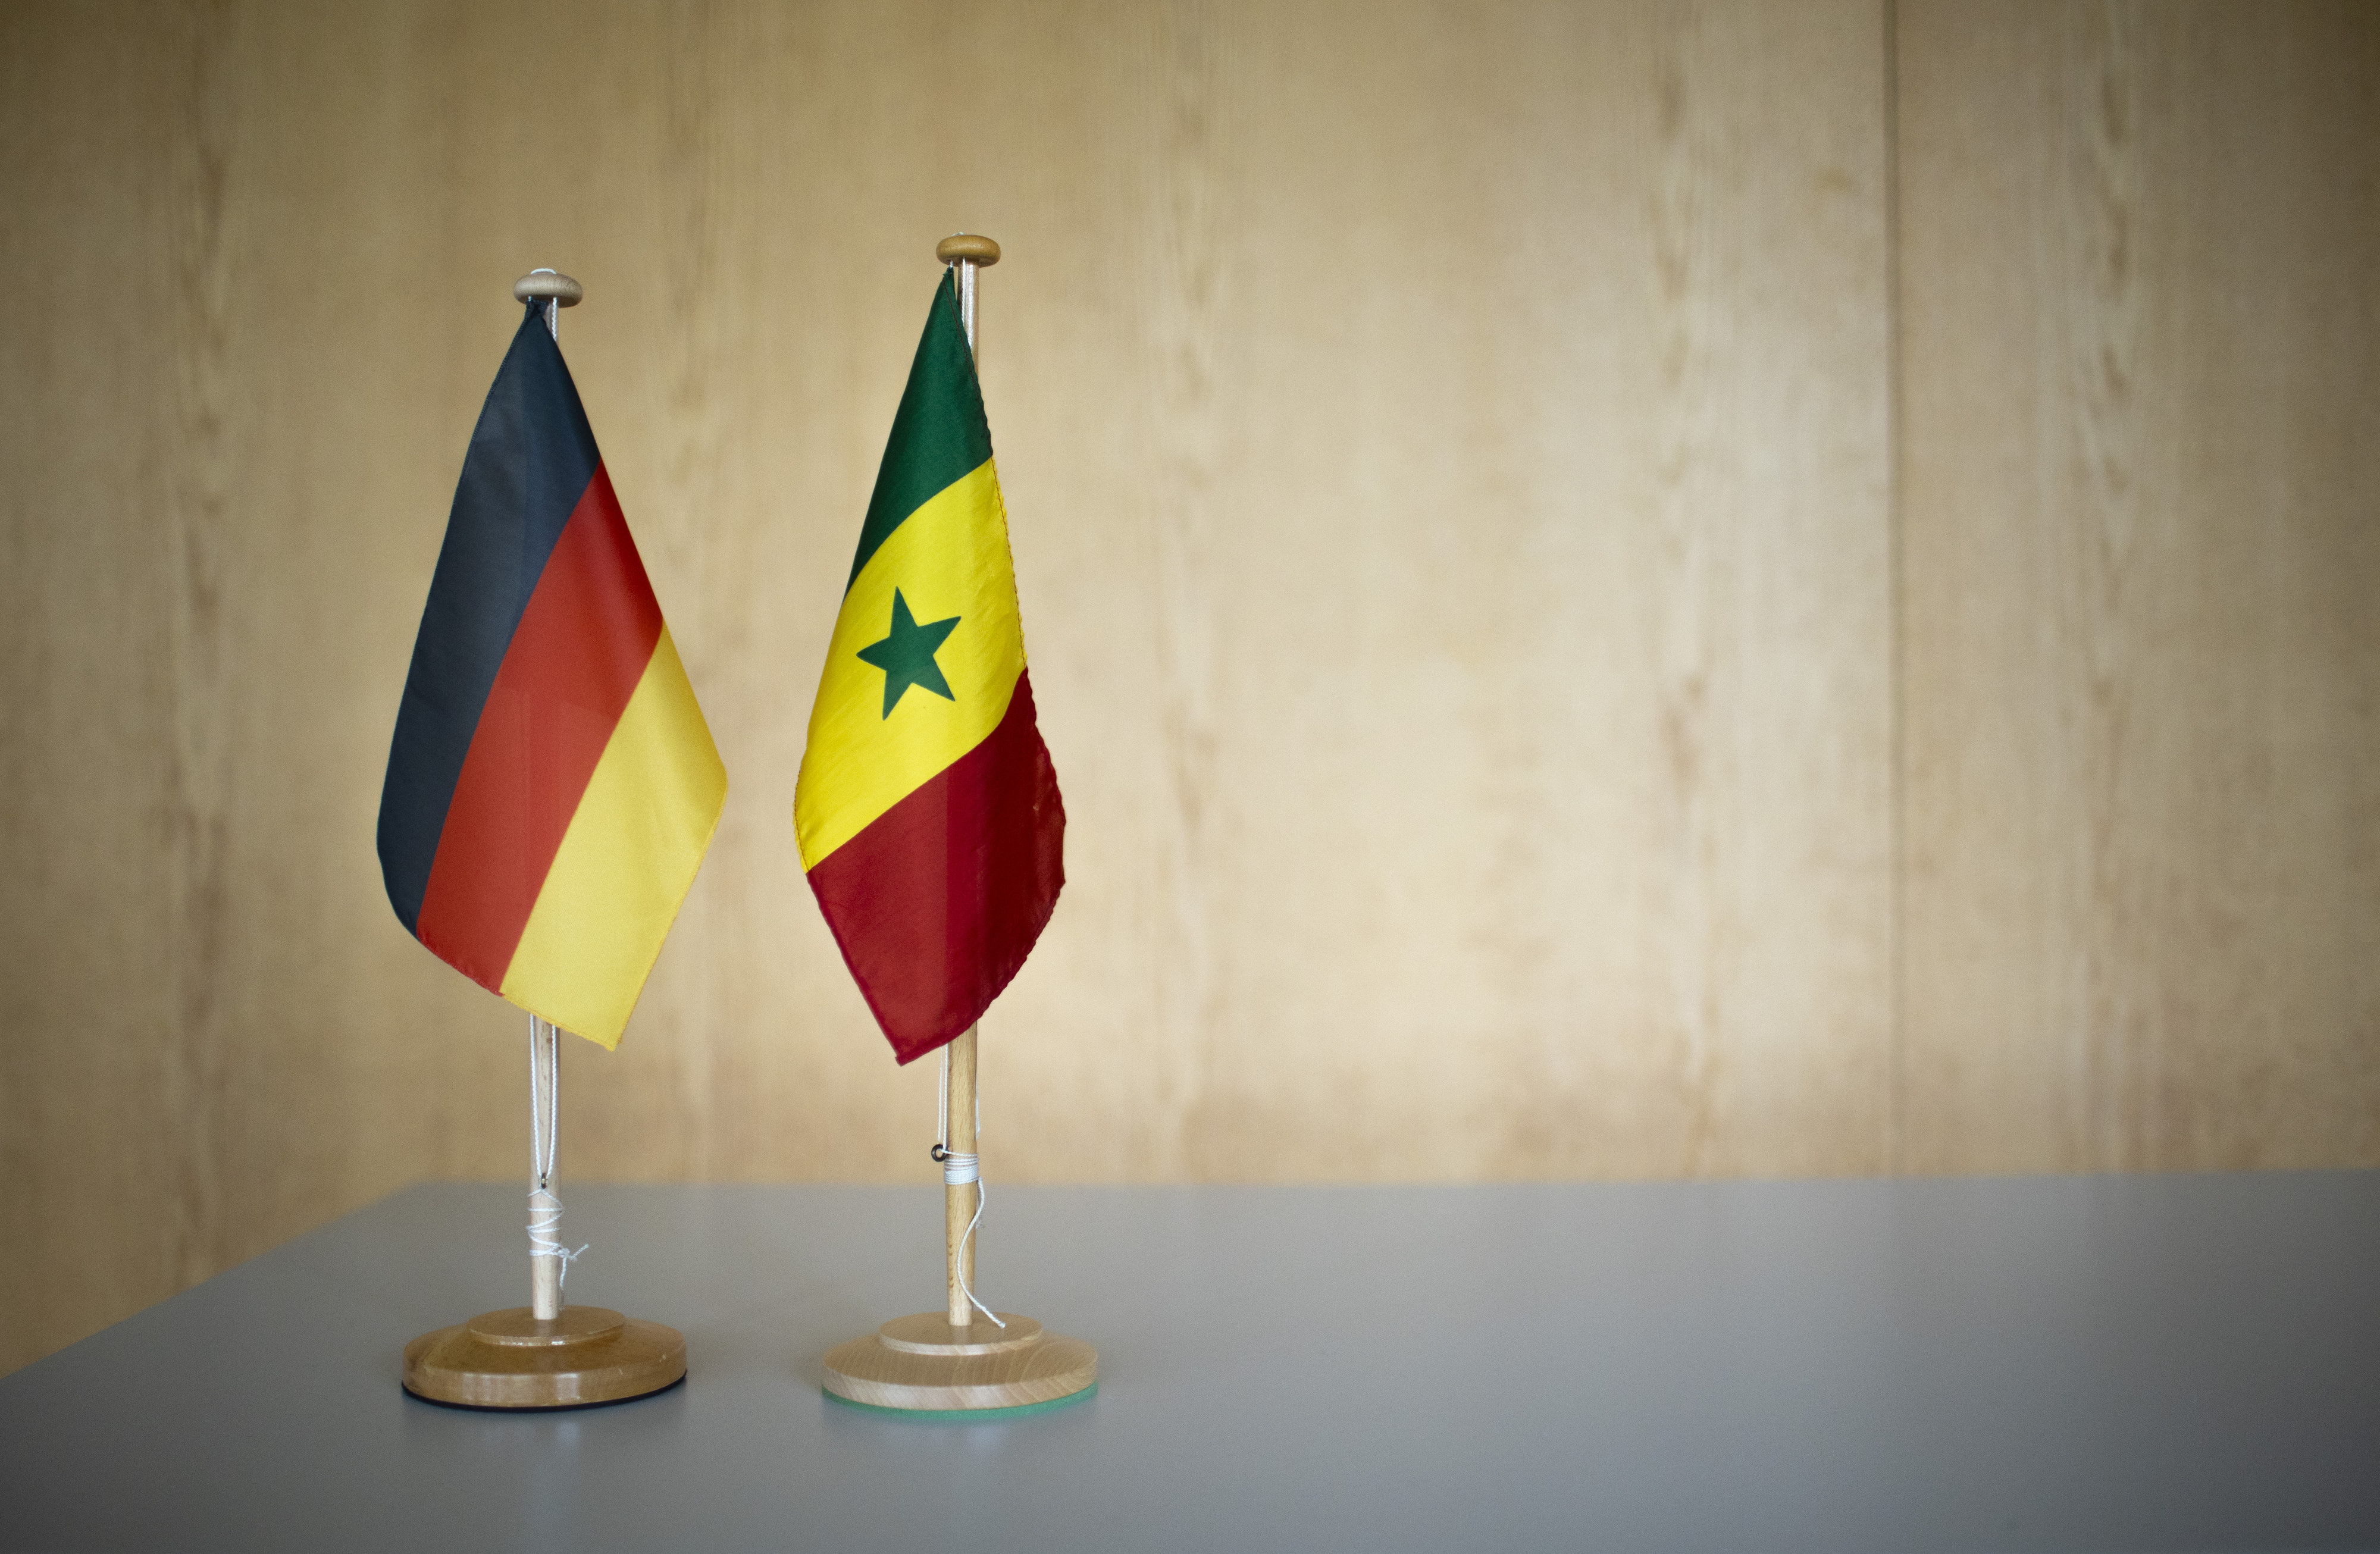 Tischflaggen von Deutschland und Senegal stehen nebeneinander auf einer Tischplatte vor einer Wand